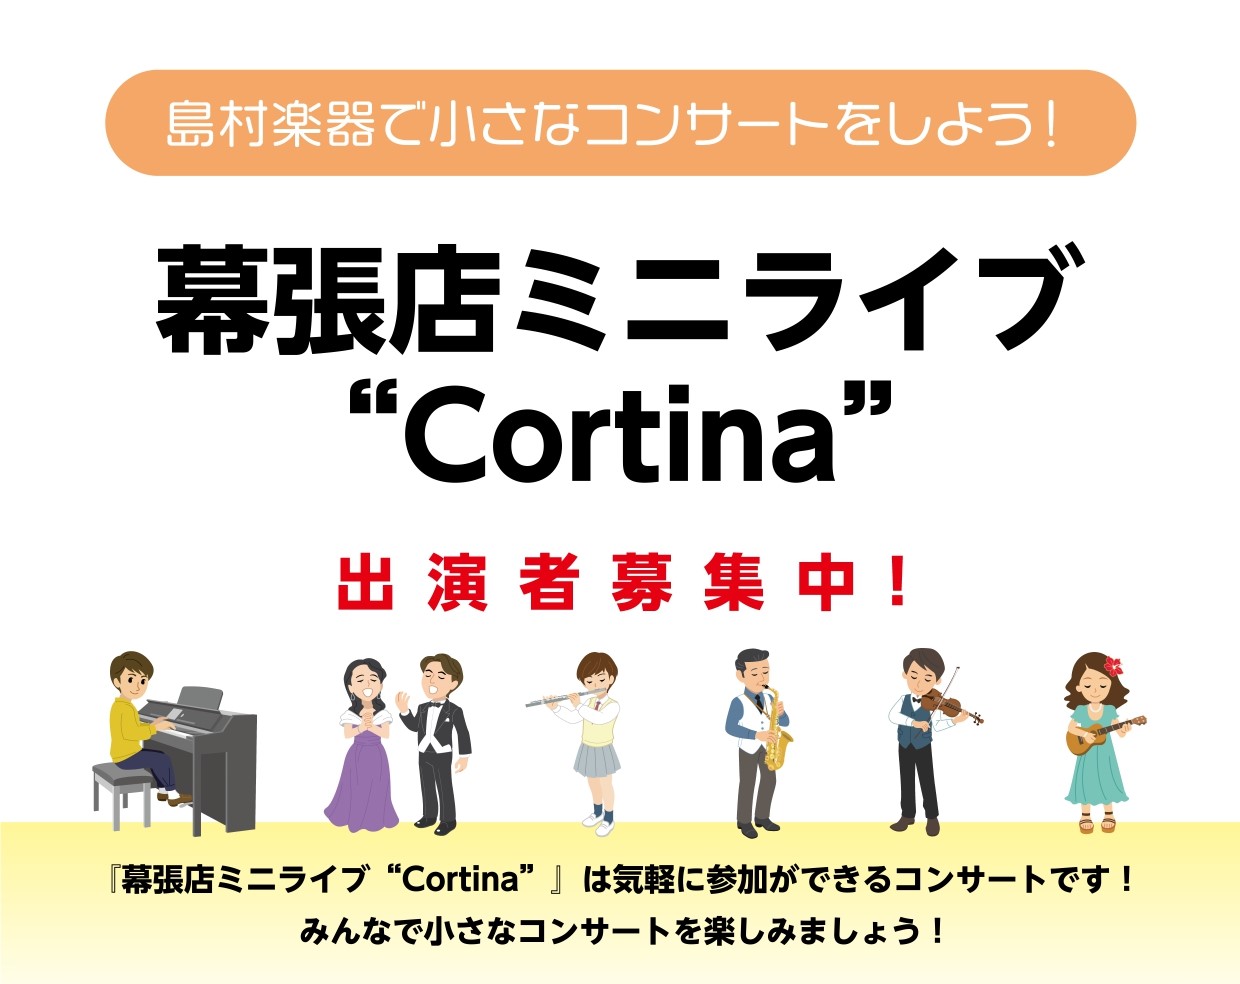 幕張店ミニライブ"Cortina Vol.2"出演者募集中!!! 先日、1回目の開催が大成功に終わったCortinaですが、なんと!!Vol.2を開催する事に決定いたしました～!1回目ってどんな感じだったの？と気になる方はこちらをご覧ください♪ 小さなコンサートは、「練習していても、発表の場がない、 […]